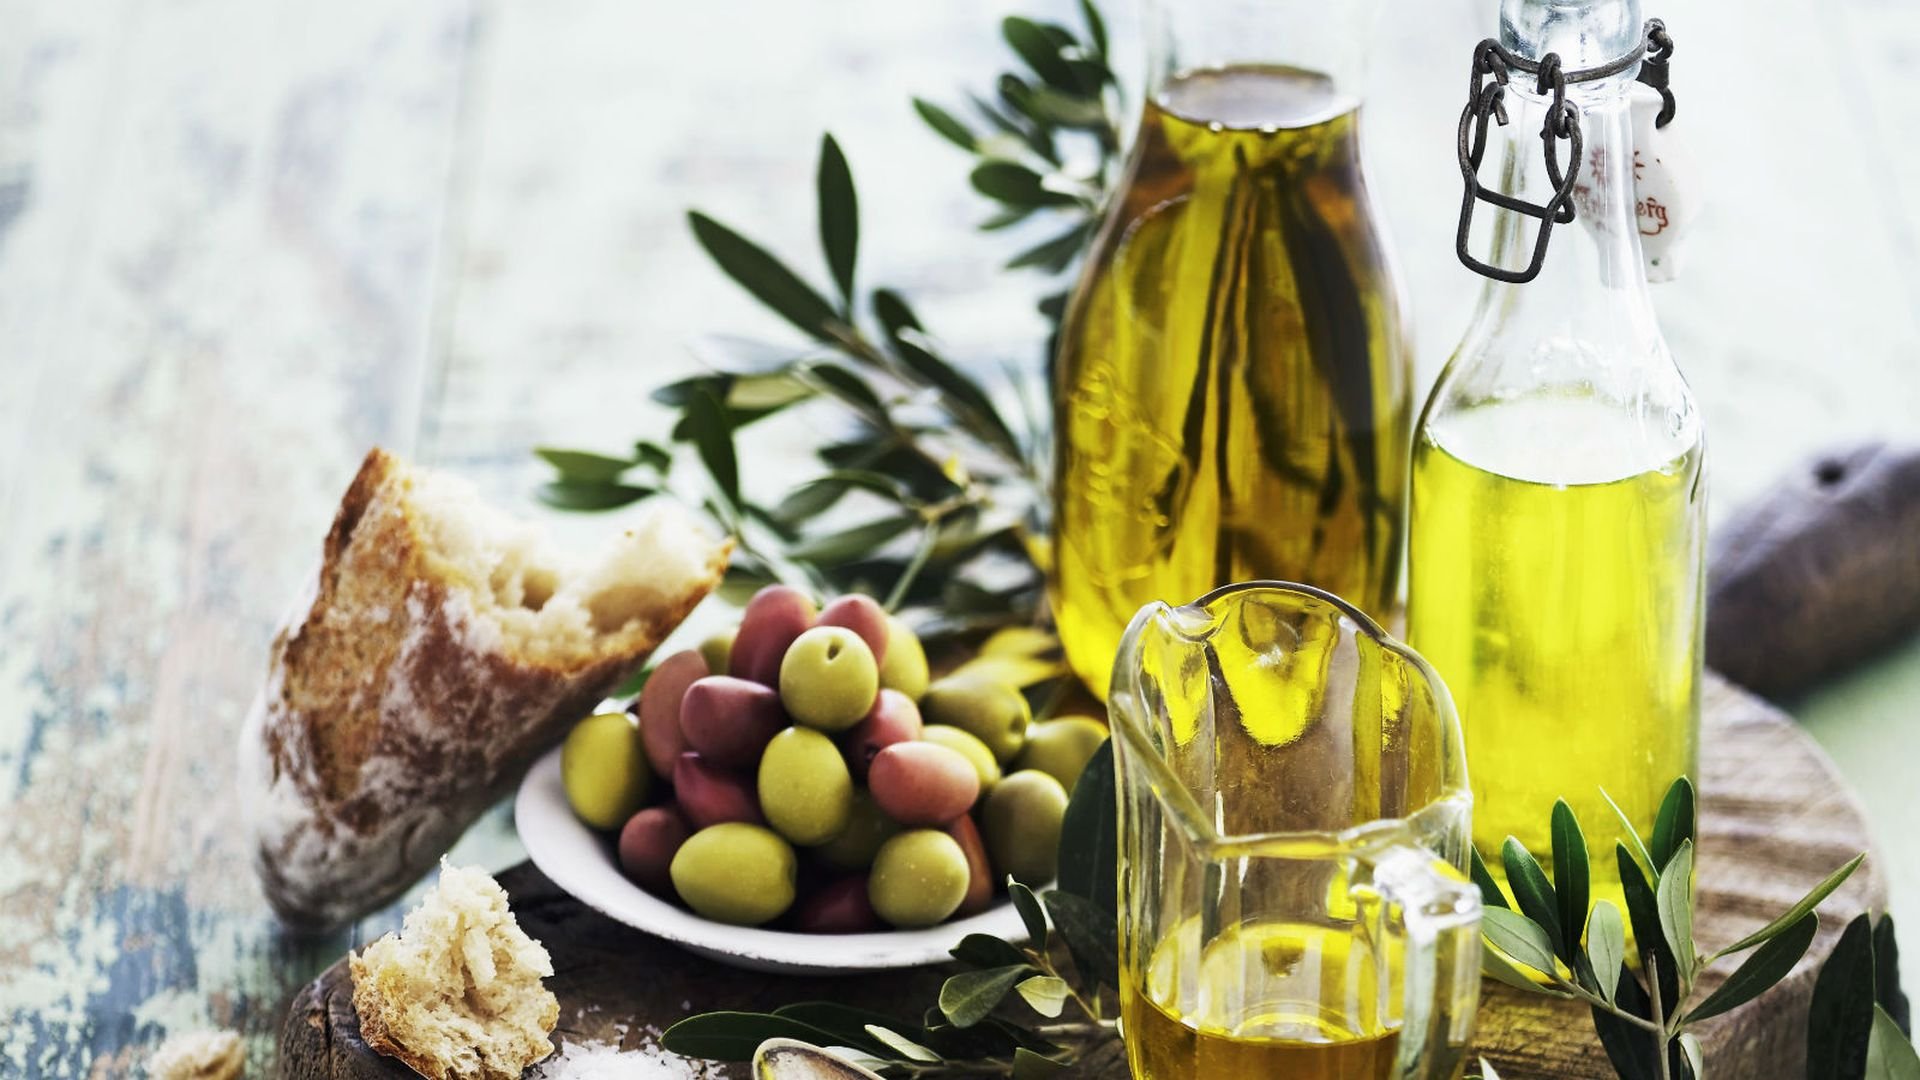 Оливковое масло cratos extra